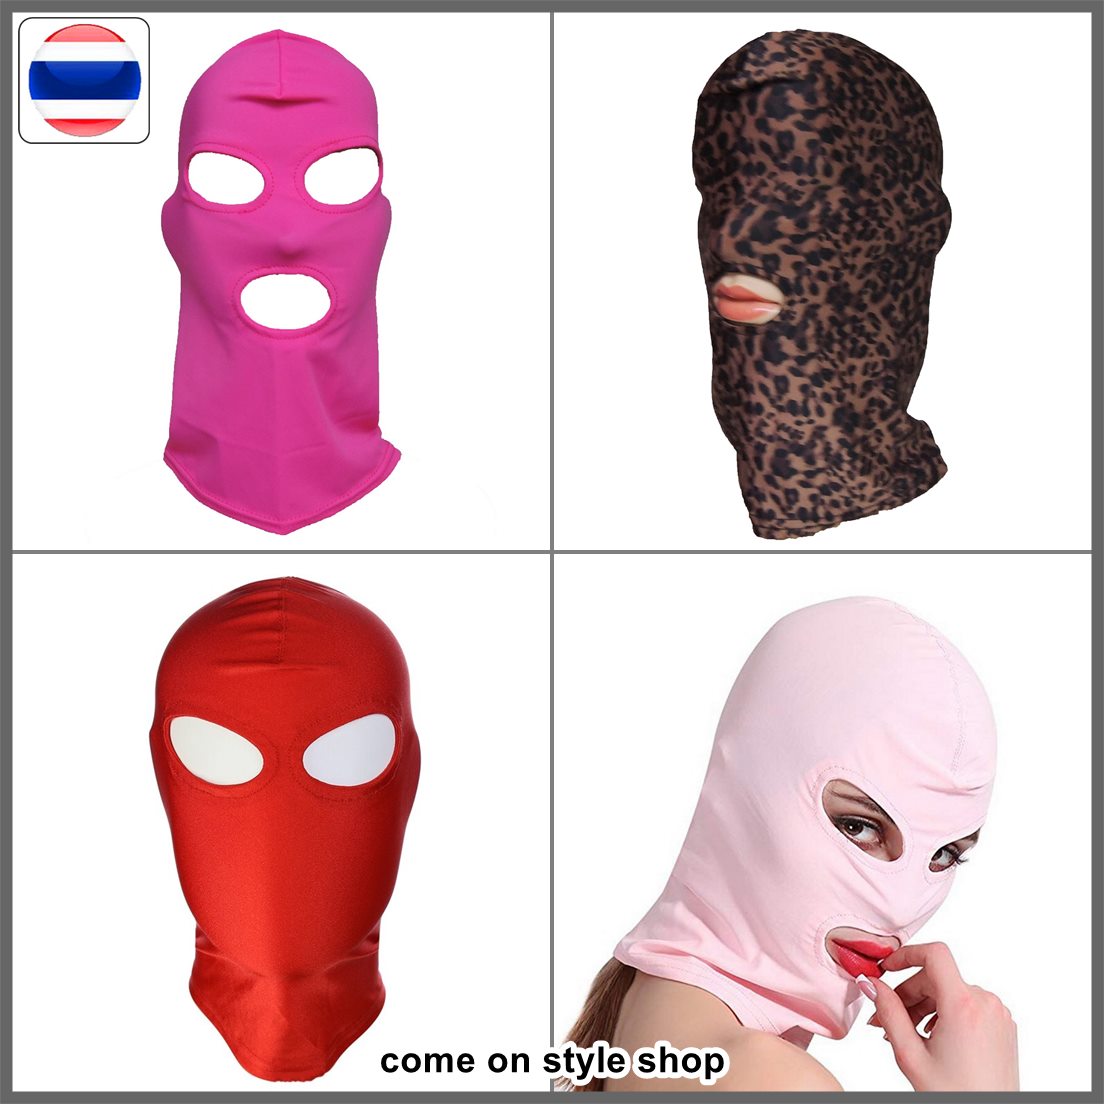 หมวกโม่งแฟนซี ผ้ายืดคลุมหัว น่ารัก เซ็กซ์ซี่ คอสเพลย์ อนิเมะ มังงั งานแฟนซี ปาร์ตี้ สินค้าผู้ใหญ่ Full Cover Hood Elastic Breathable Party Fancy Mask